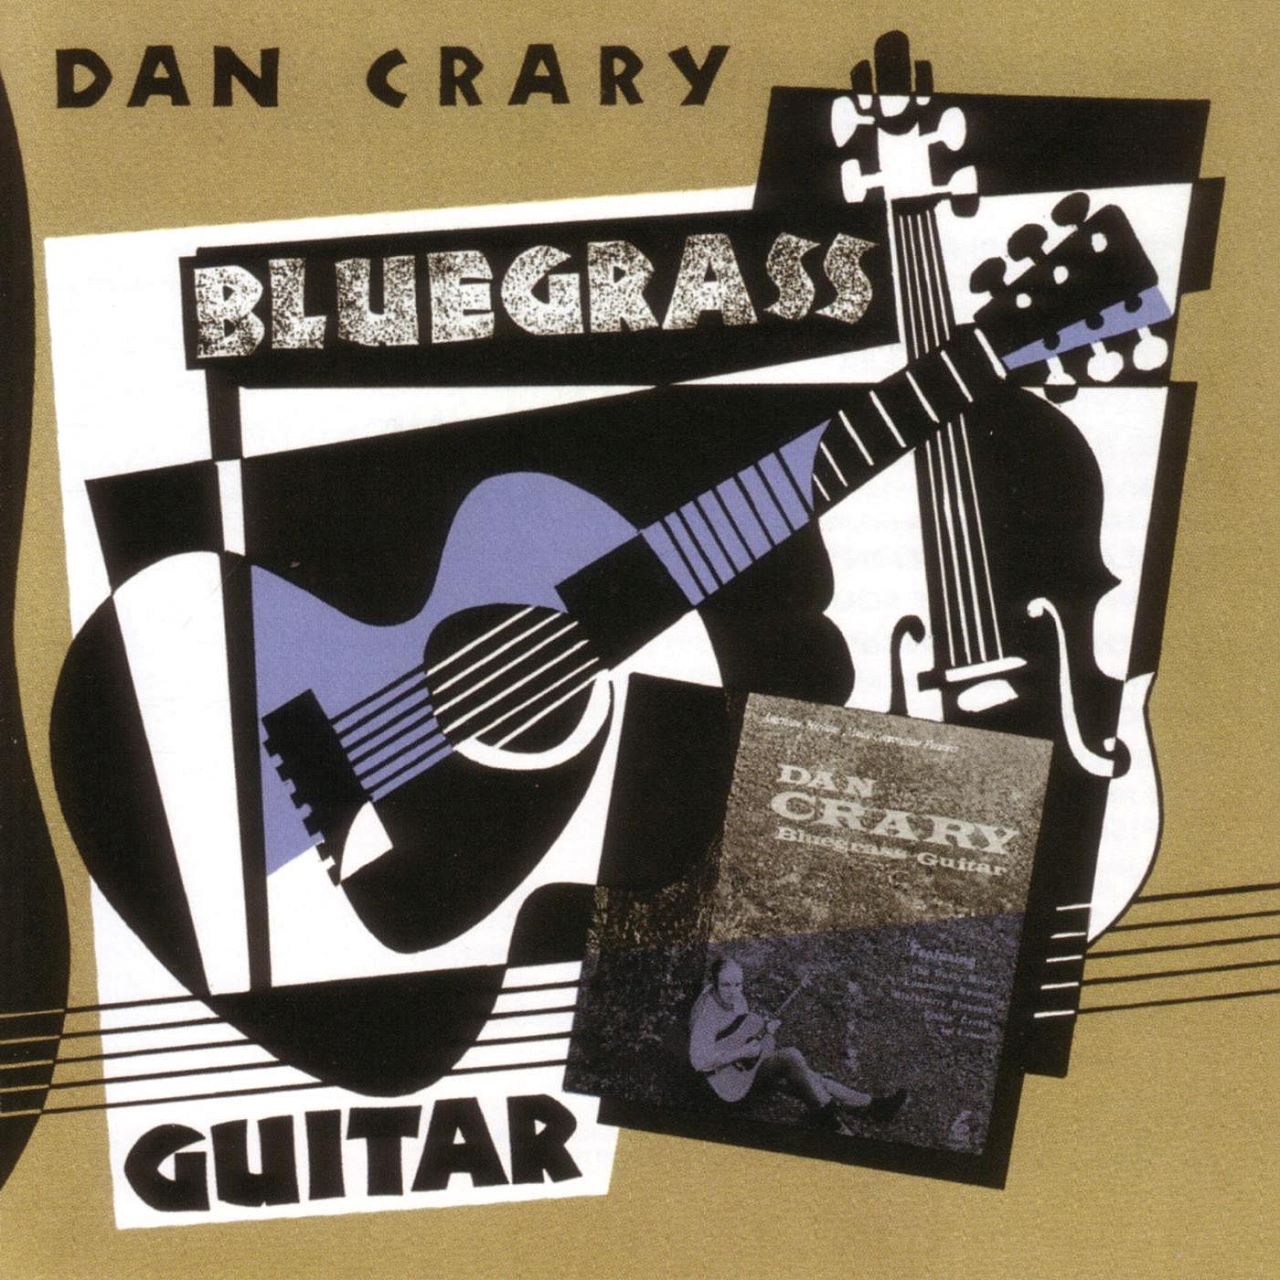 Dan Crary - Bluegrass Guitar cover album